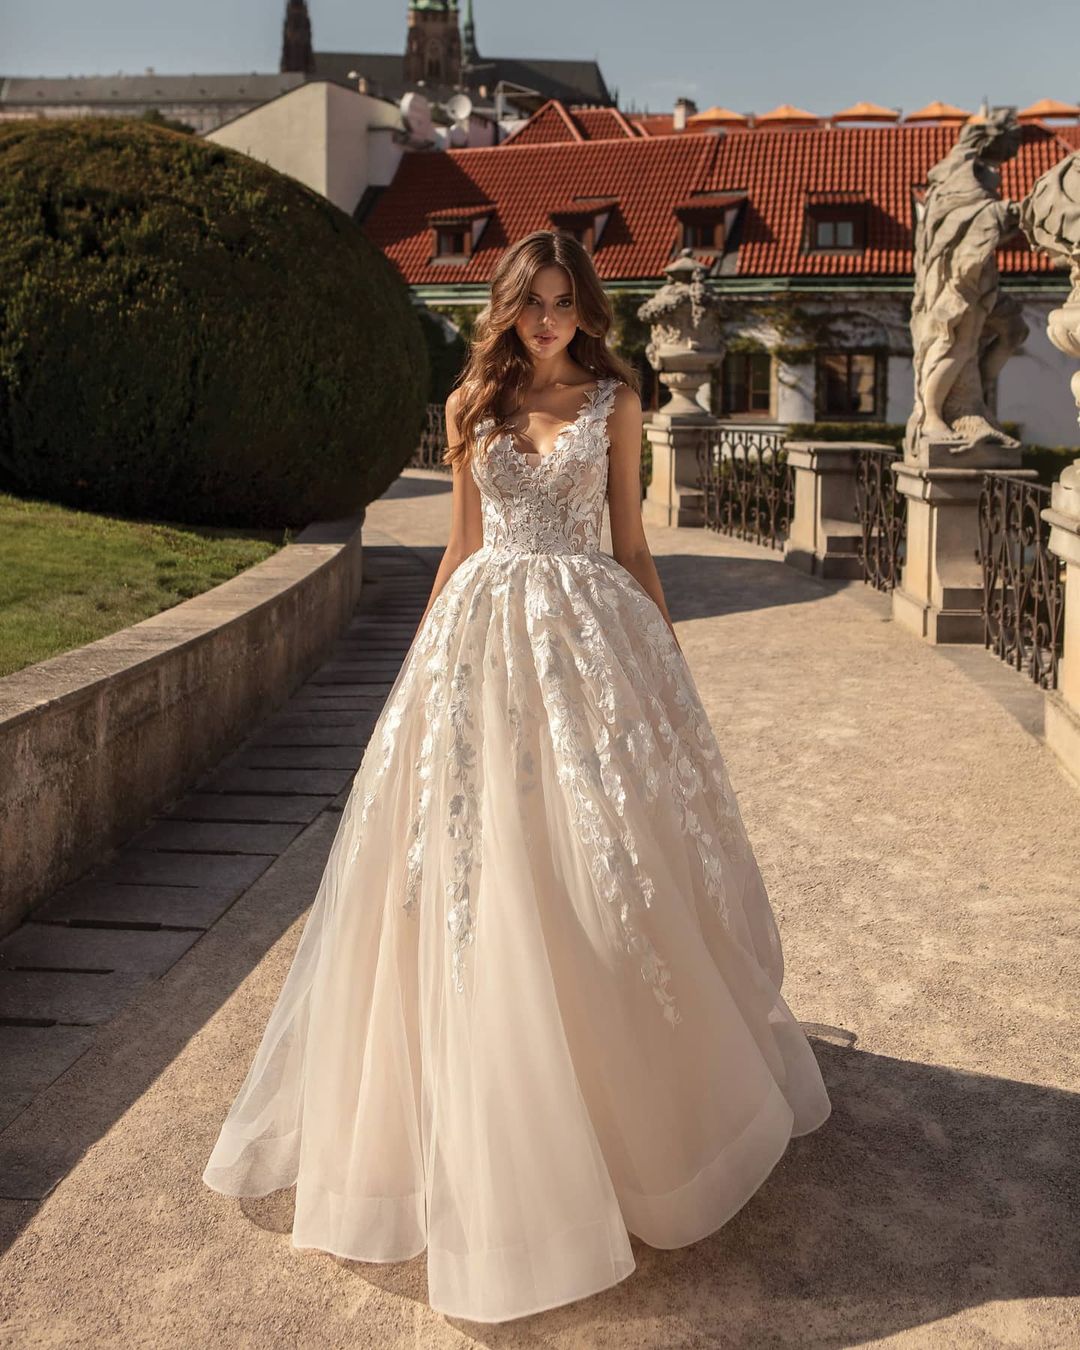 Iconic elegant celebrity wedding dresses of 2021 | Melody Jacob